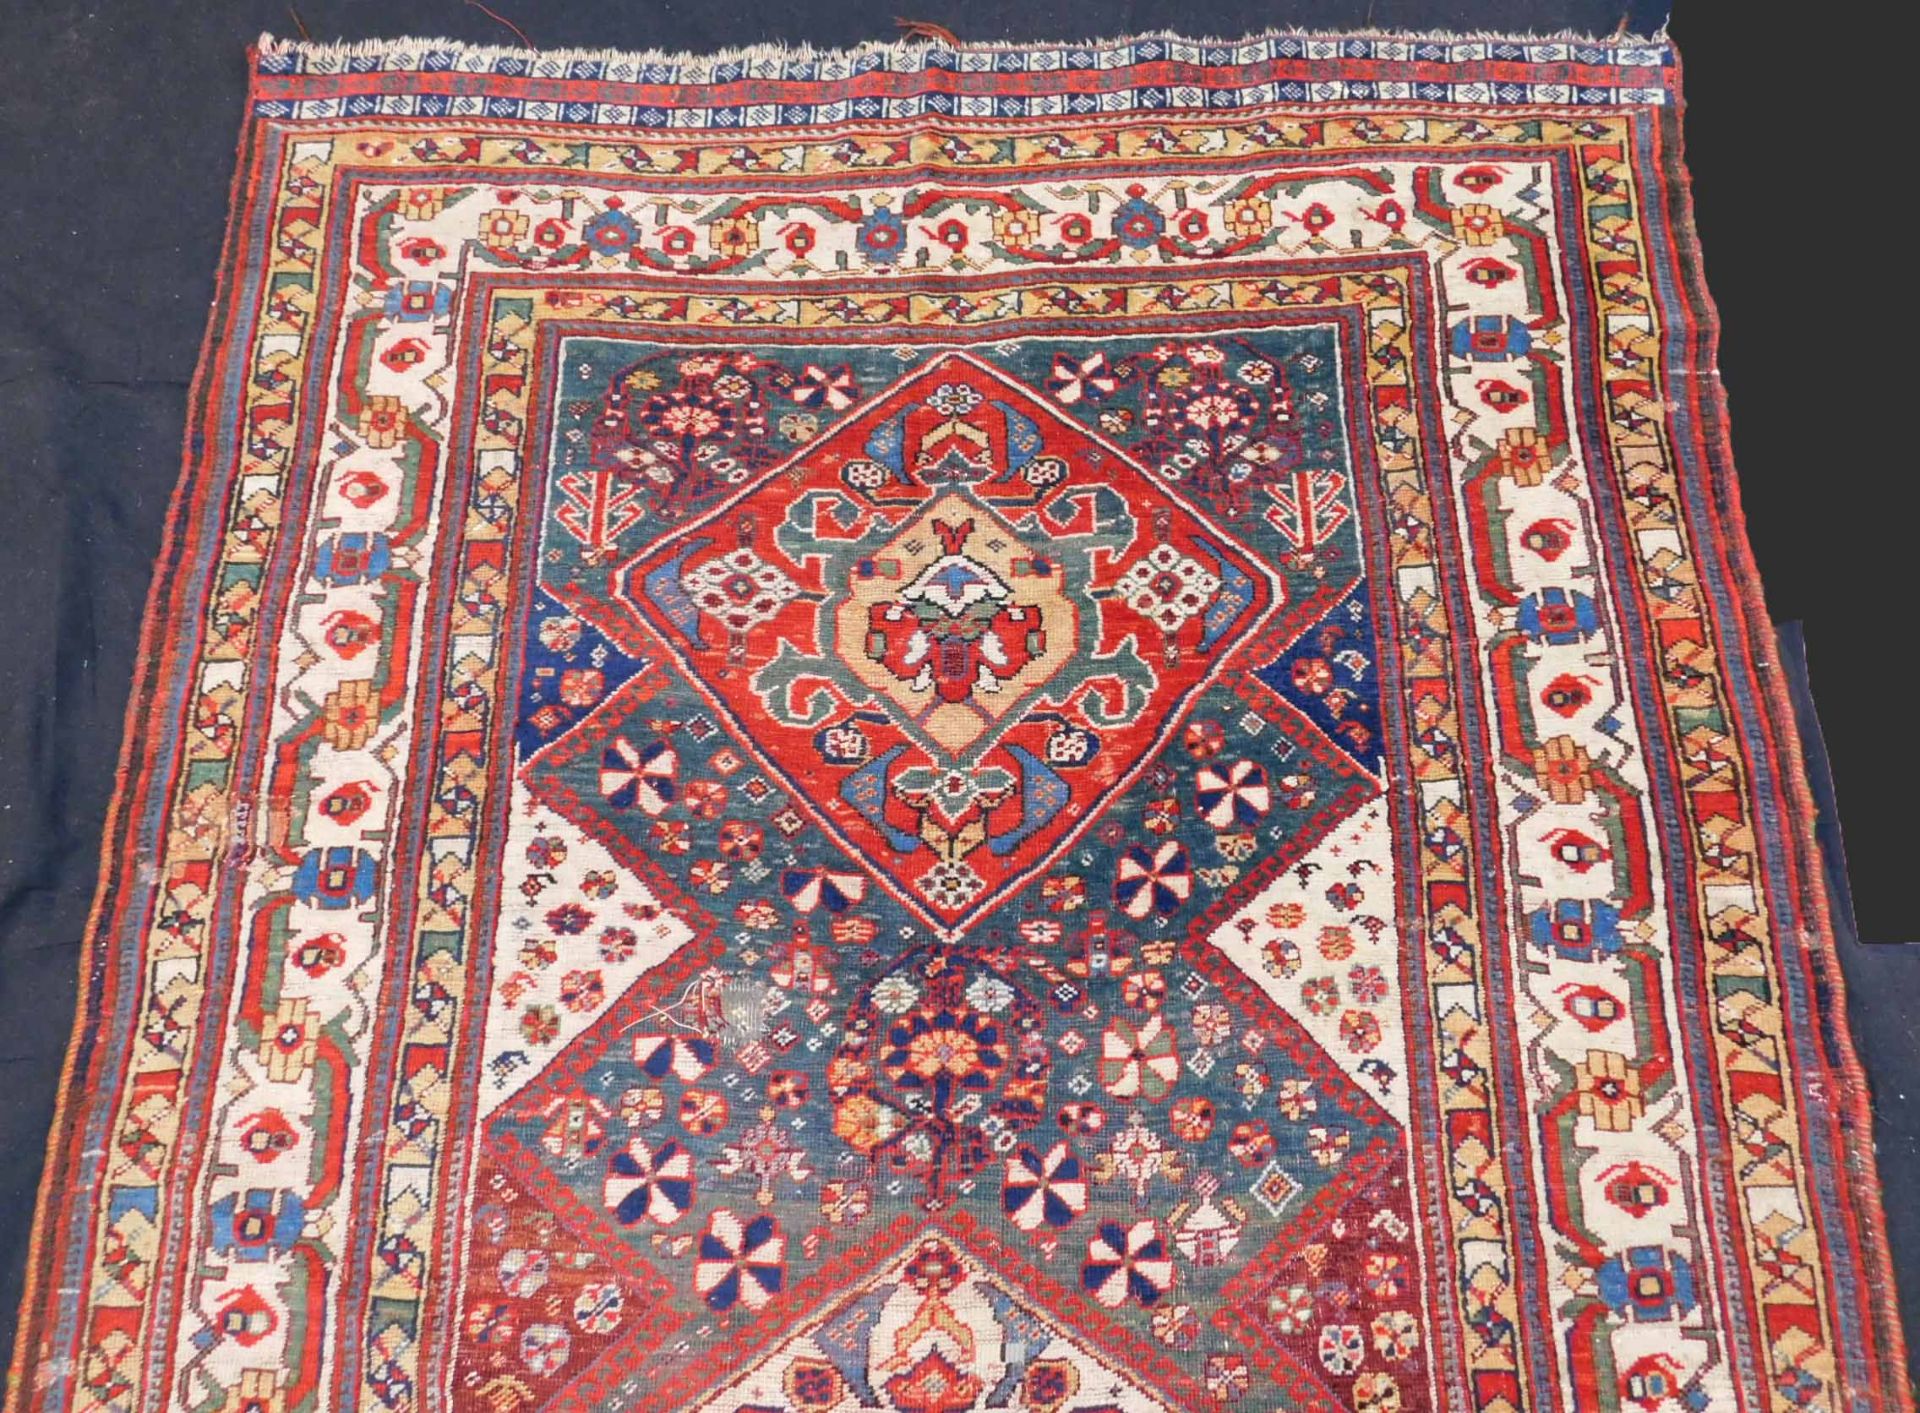 Qashqai Persian carpet. Iran. Antique, around 120-160 years old. - Bild 4 aus 9